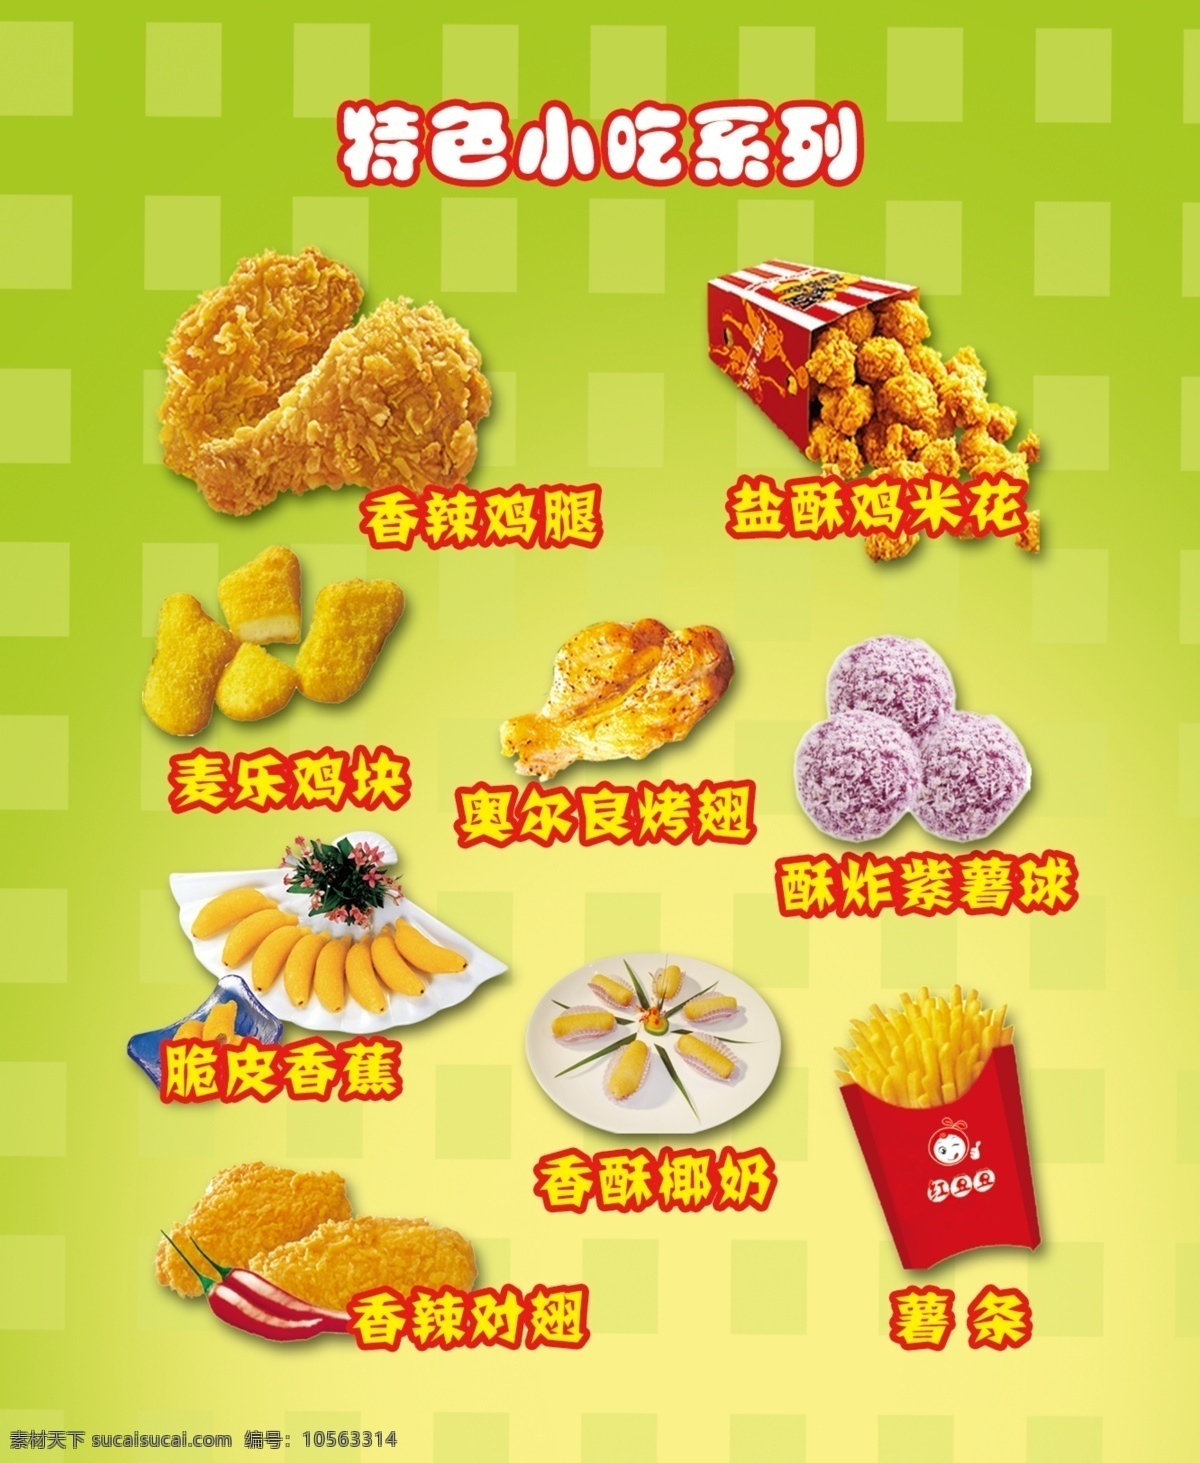 特色小吃系列 炸香蕉 薯条 紫薯 鸡块 广告设计模板 源文件